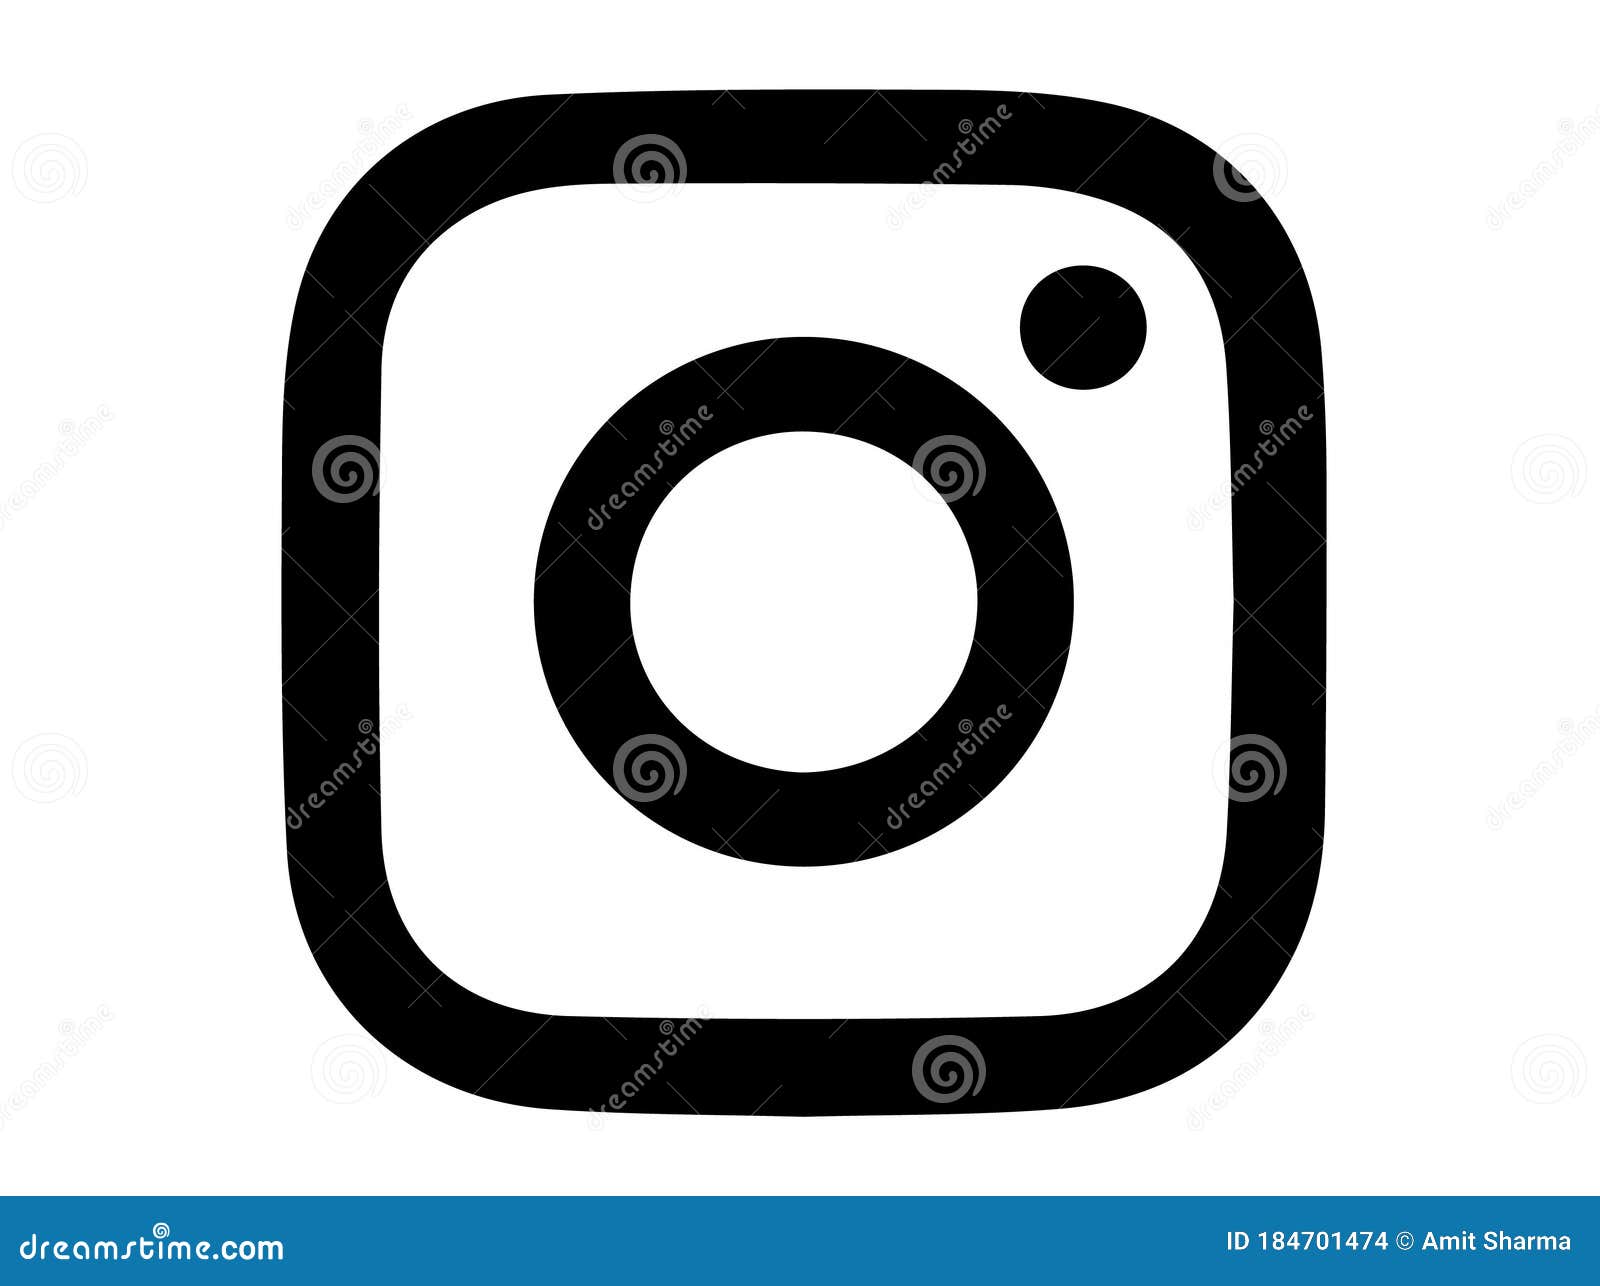 Biểu tượng Instagram đơn giản: Với sự đơn giản và trẻ trung, biểu tượng Instagram đã trở thành biểu tượng tương tác được yêu thích nhất tại Việt Nam. Bạn đã nhìn thấy biểu tượng Instagram đơn giản này chưa? Nếu chưa, hãy xem ngay hình ảnh liên quan để cập nhật ngay nhé!